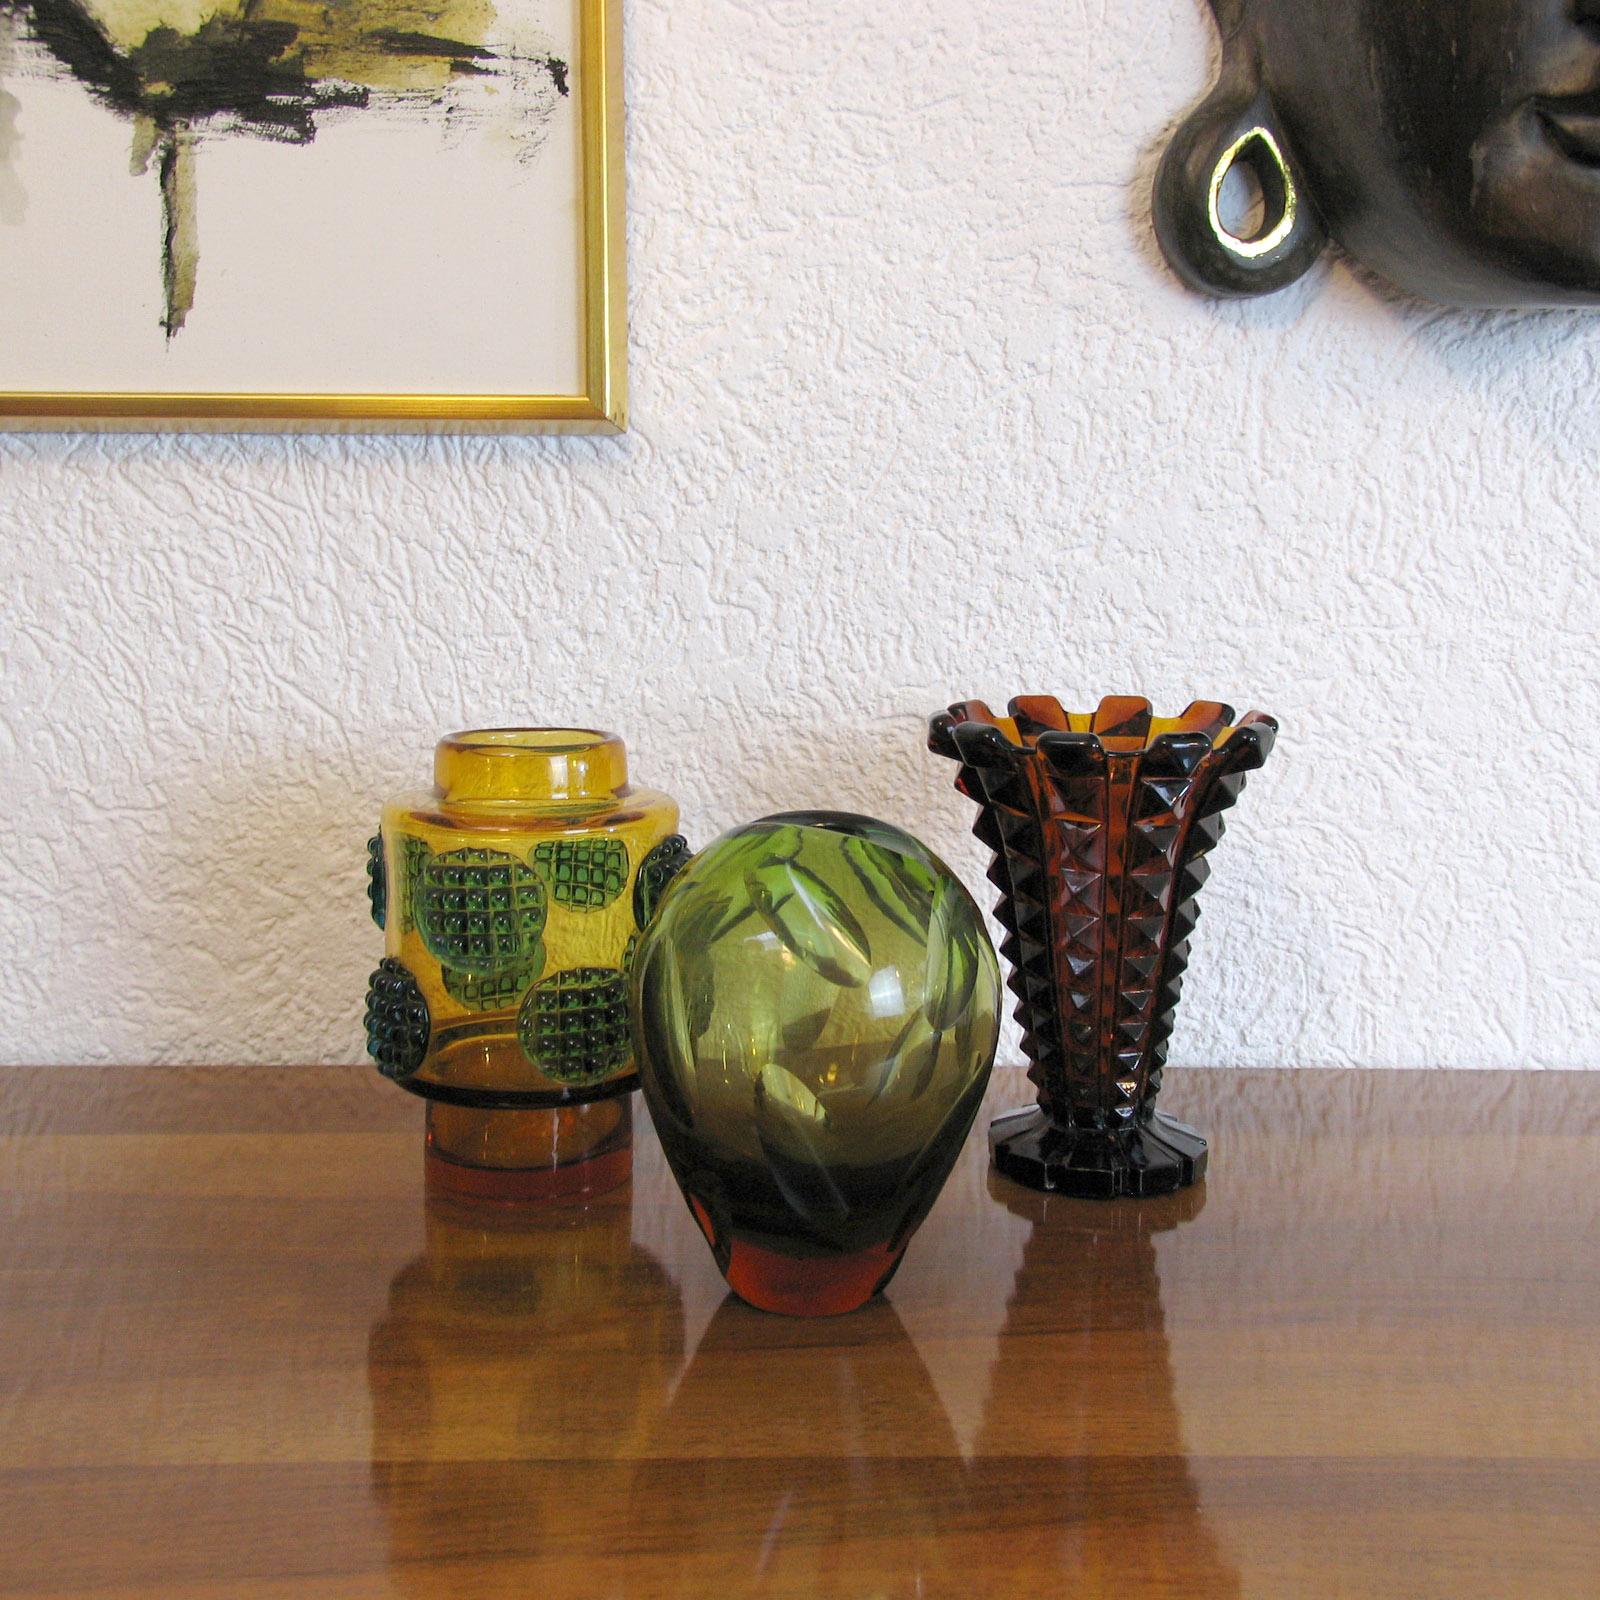 Joli vase en verre ambré du 20e siècle, datant du début de la période Art Déco en Autriche vers 1920. Un vase en verre de forme fantastique, orné d'un design spécial qui crée de magnifiques motifs selon l'incidence de la lumière. Ce magnifique vase